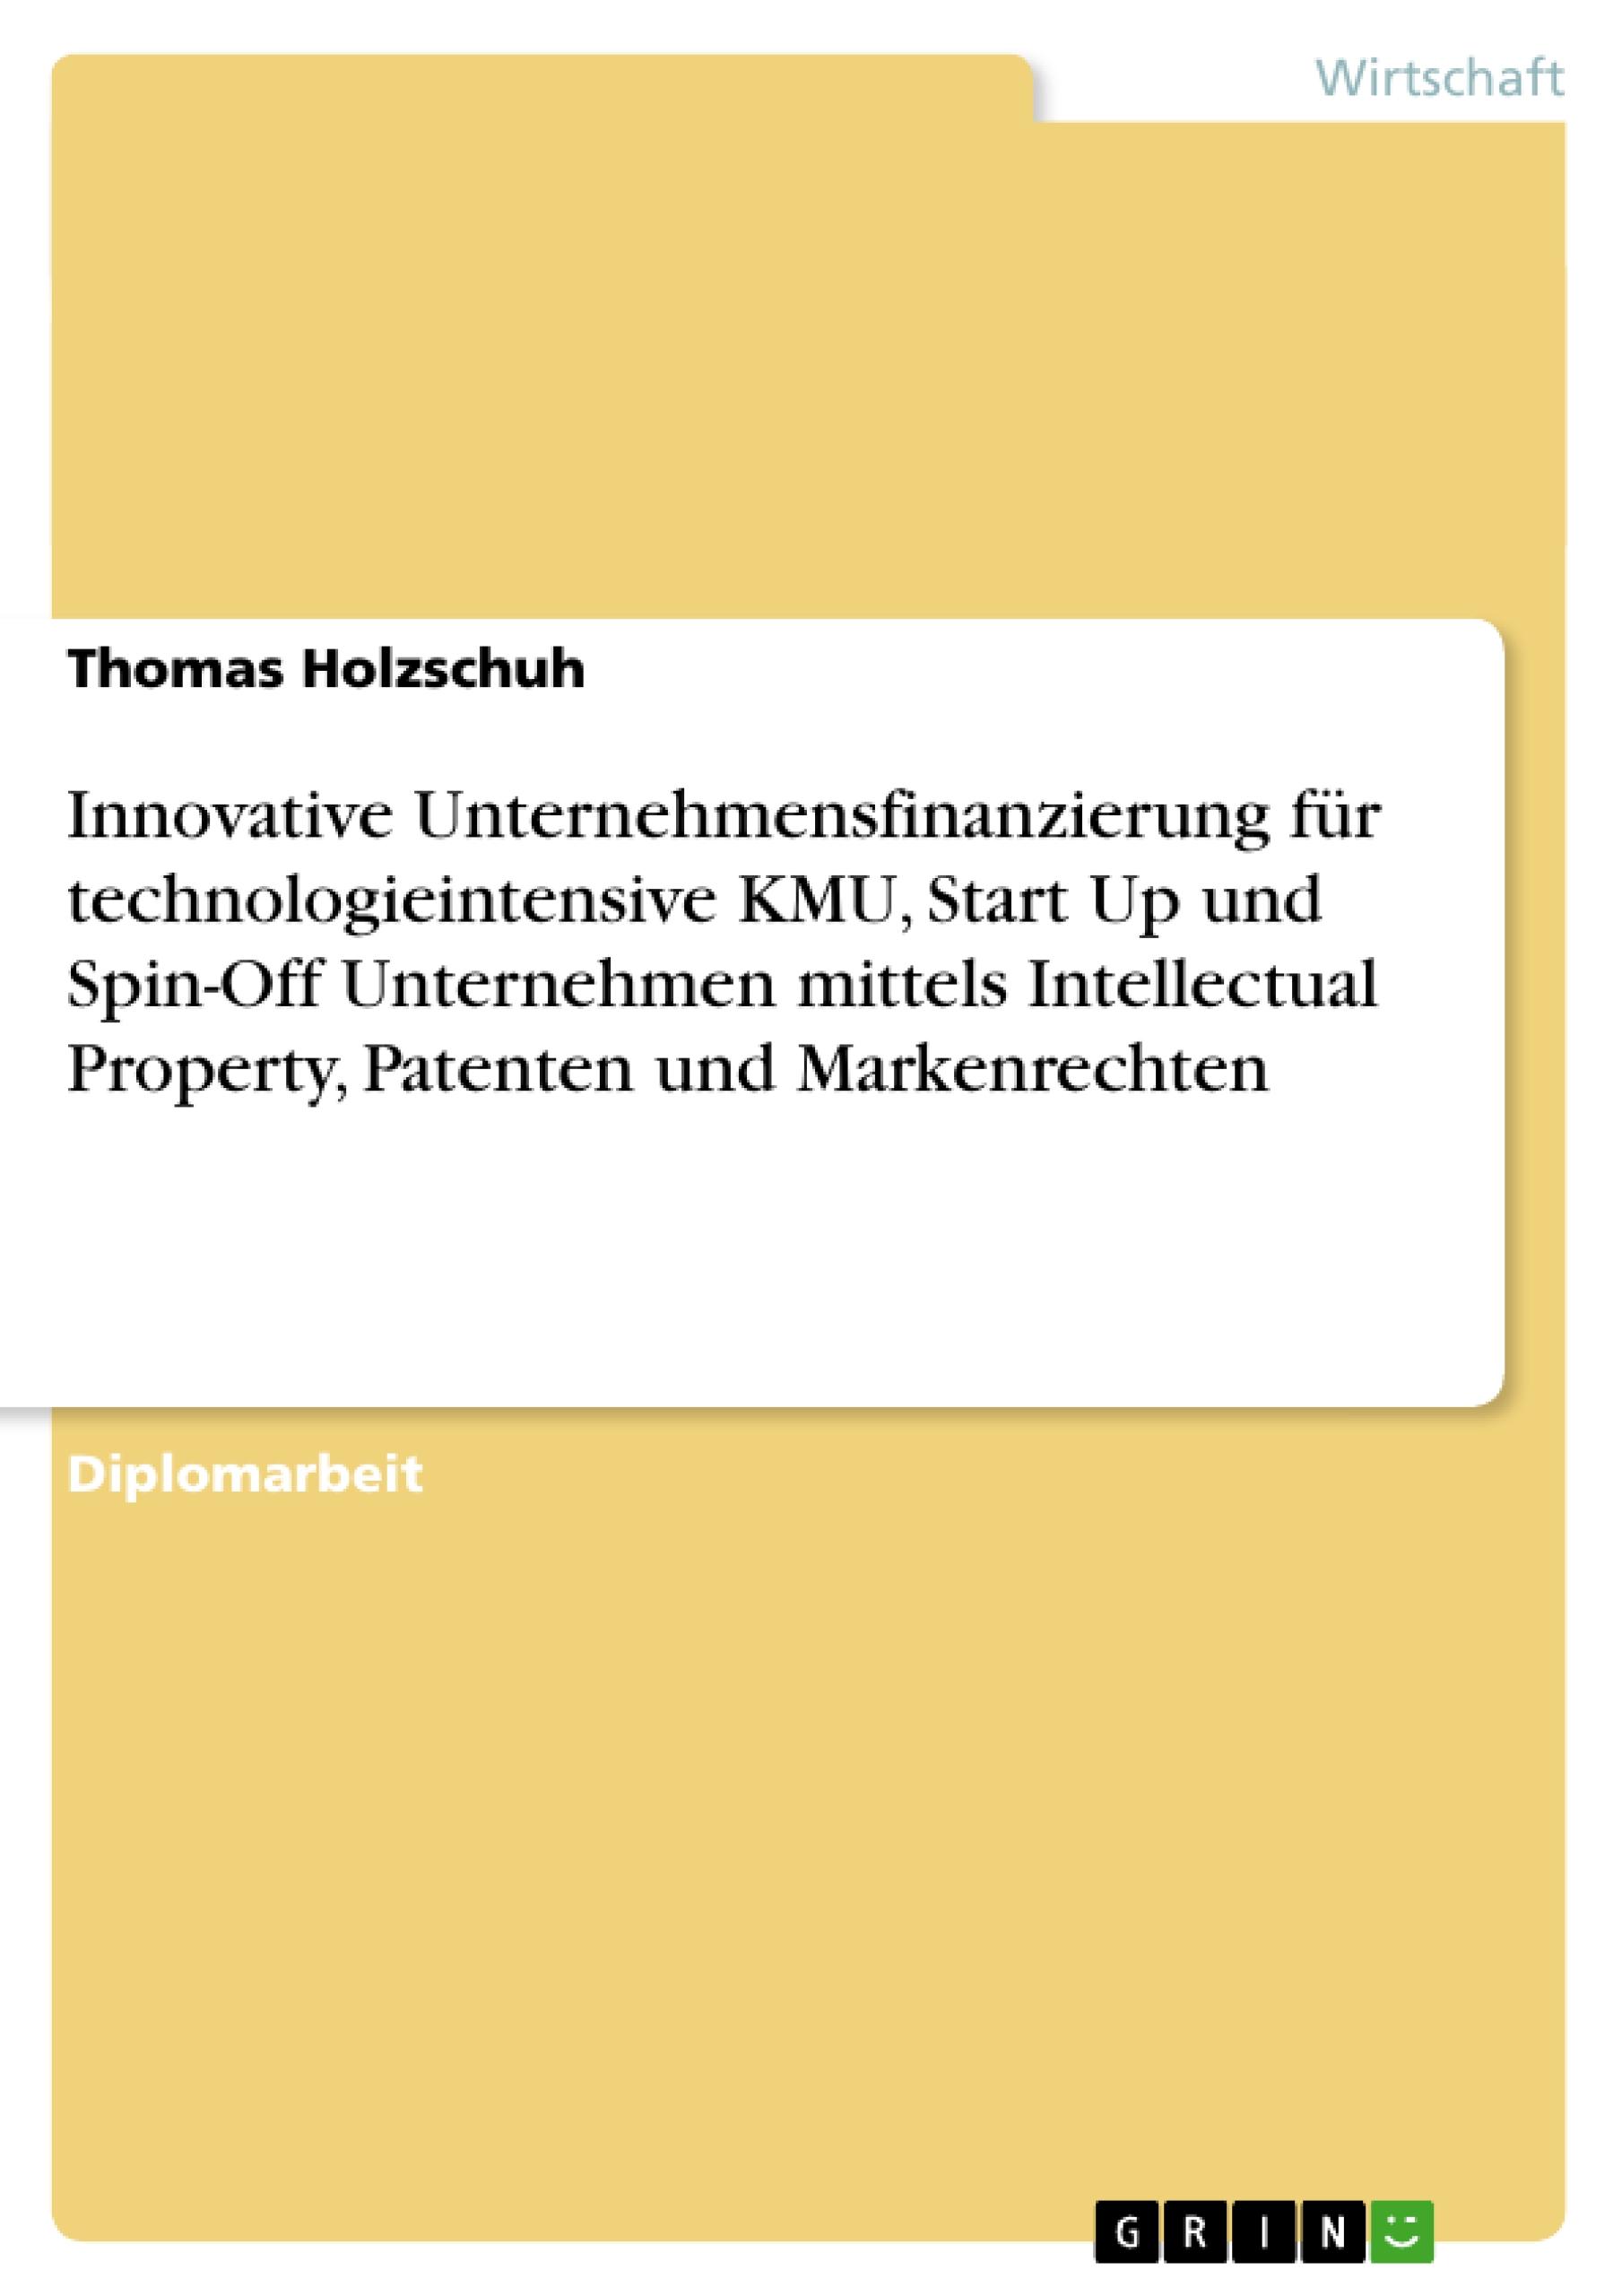 Innovative Unternehmensfinanzierung fuer technologieintensive KMU, Start Up und Spin-Off Unternehmen mittels Intellectual Property, Patenten und Markenrechten - Holzschuh, Thomas